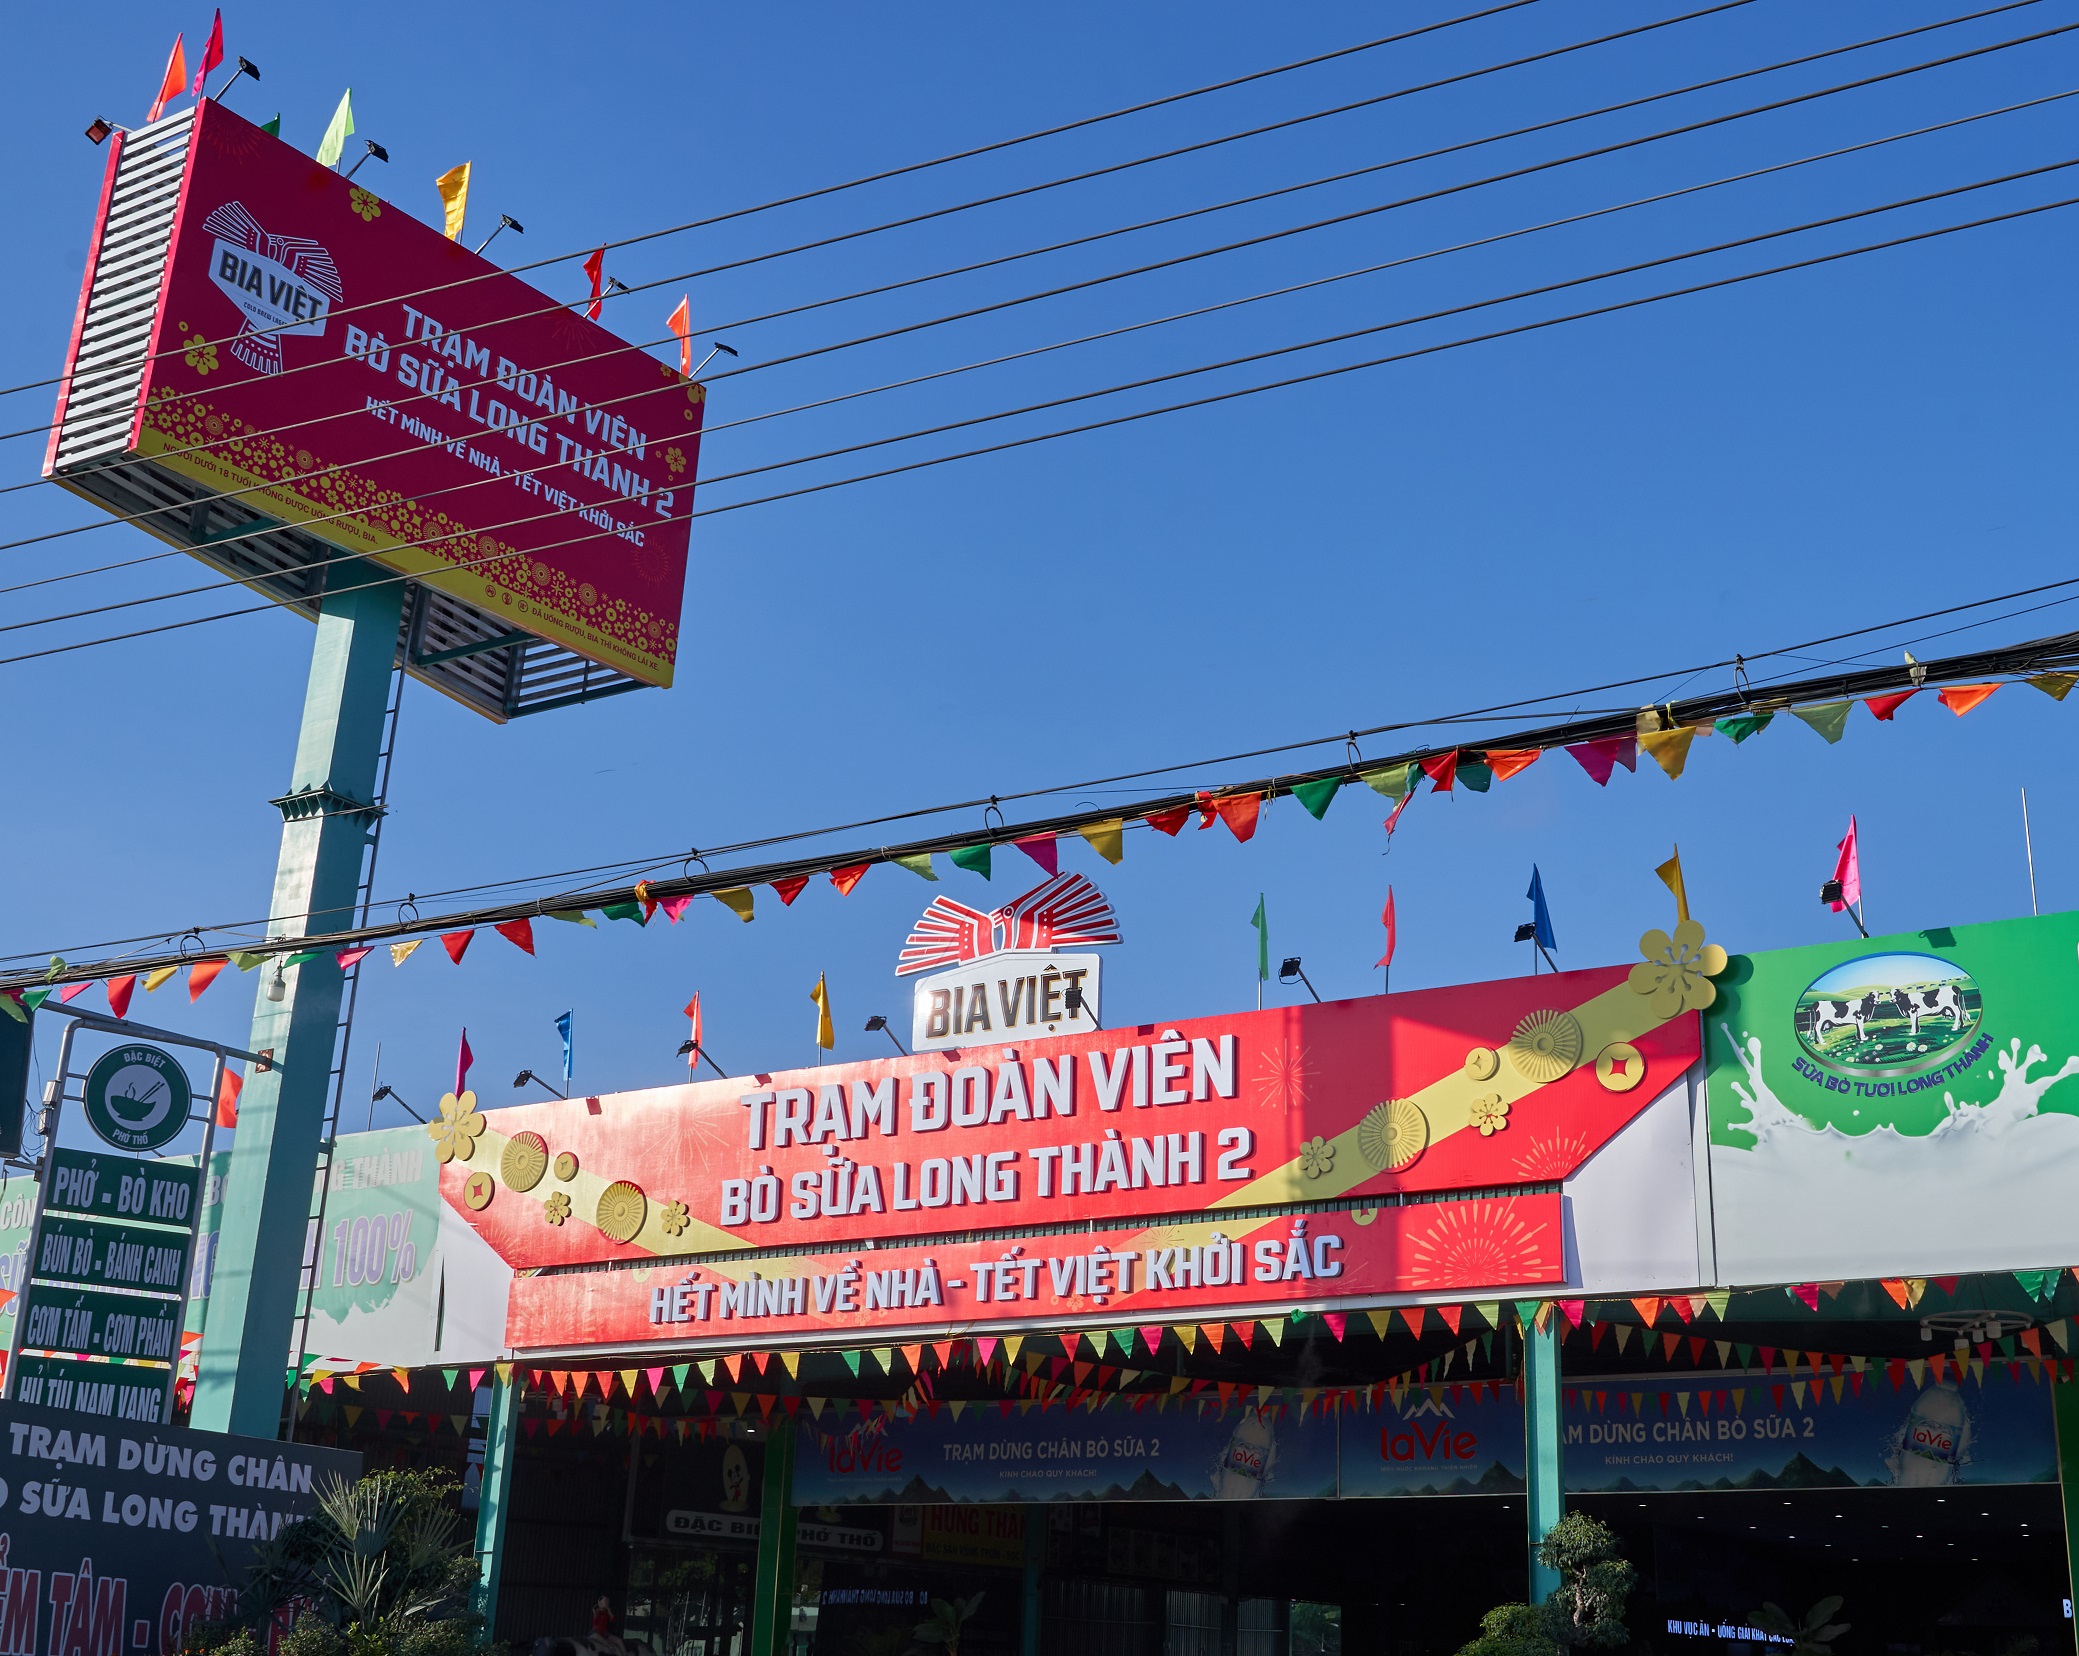 Bia Việt đồng hành cùng người Việt về nhà ăn tết với chiến dịch “Hết mình về nhà - Tết Việt khởi sắc”